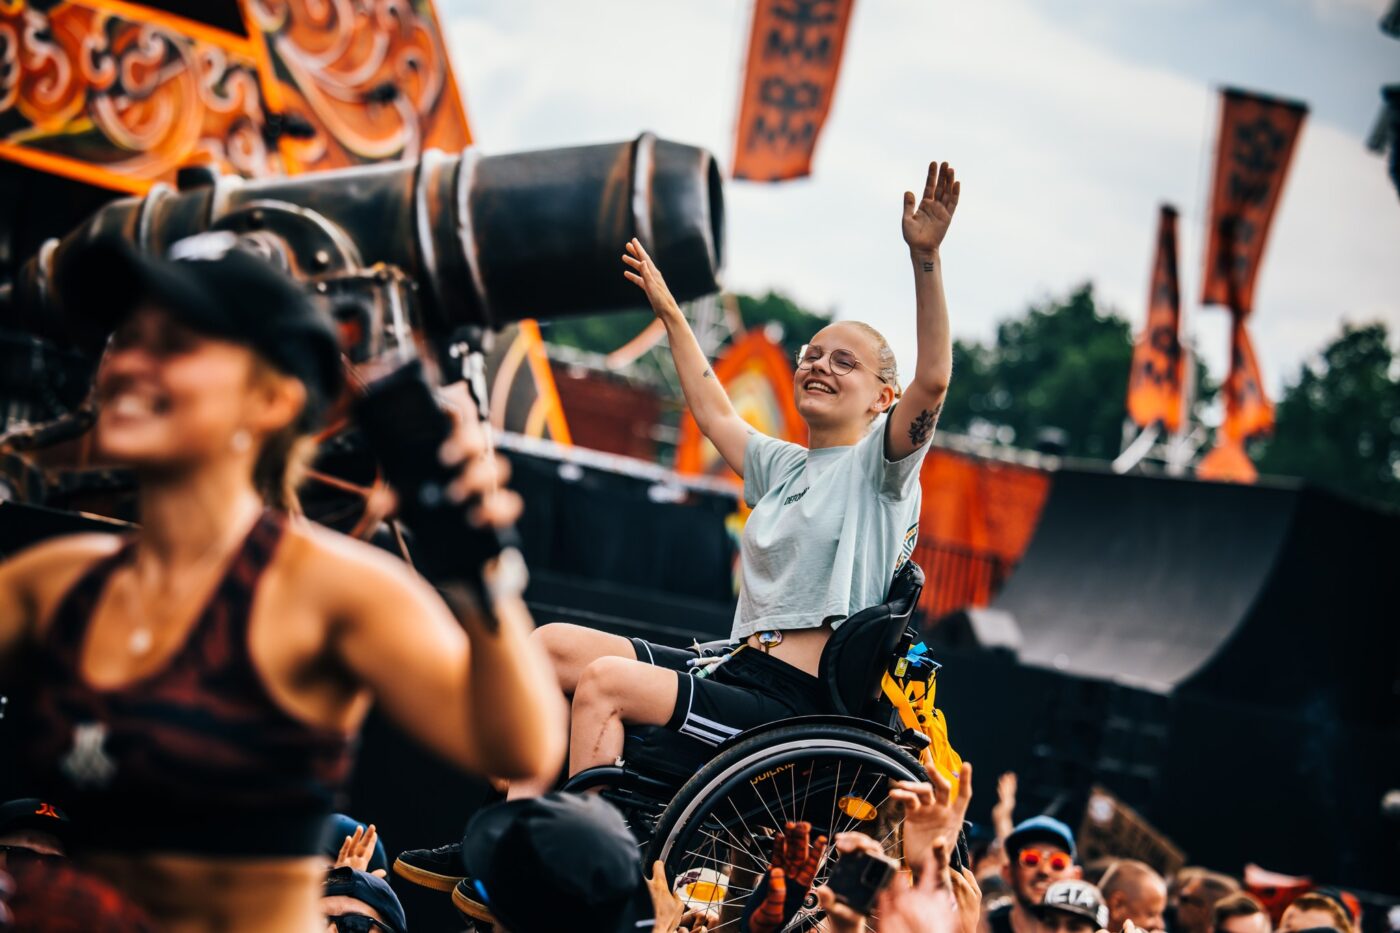 Dansen met rolstoel in publiek op Defqon Festival